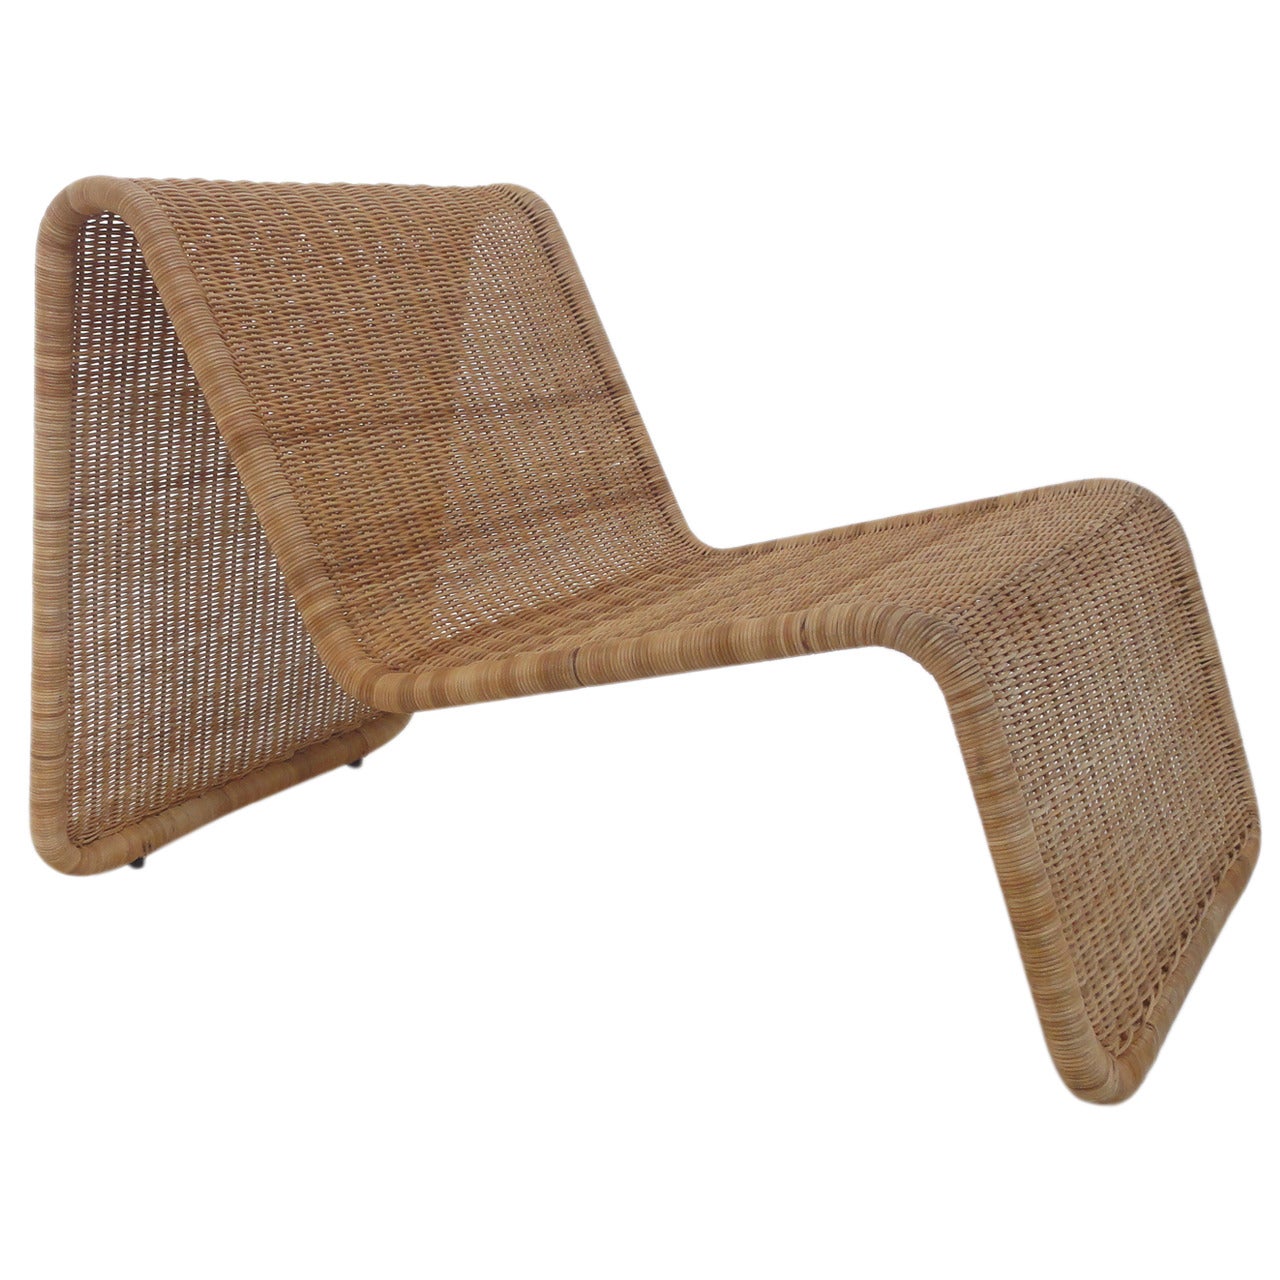 Sculptural Tito Agnoli P3 Woven Wicker Easy Chair Bonacina, Italy 1960s